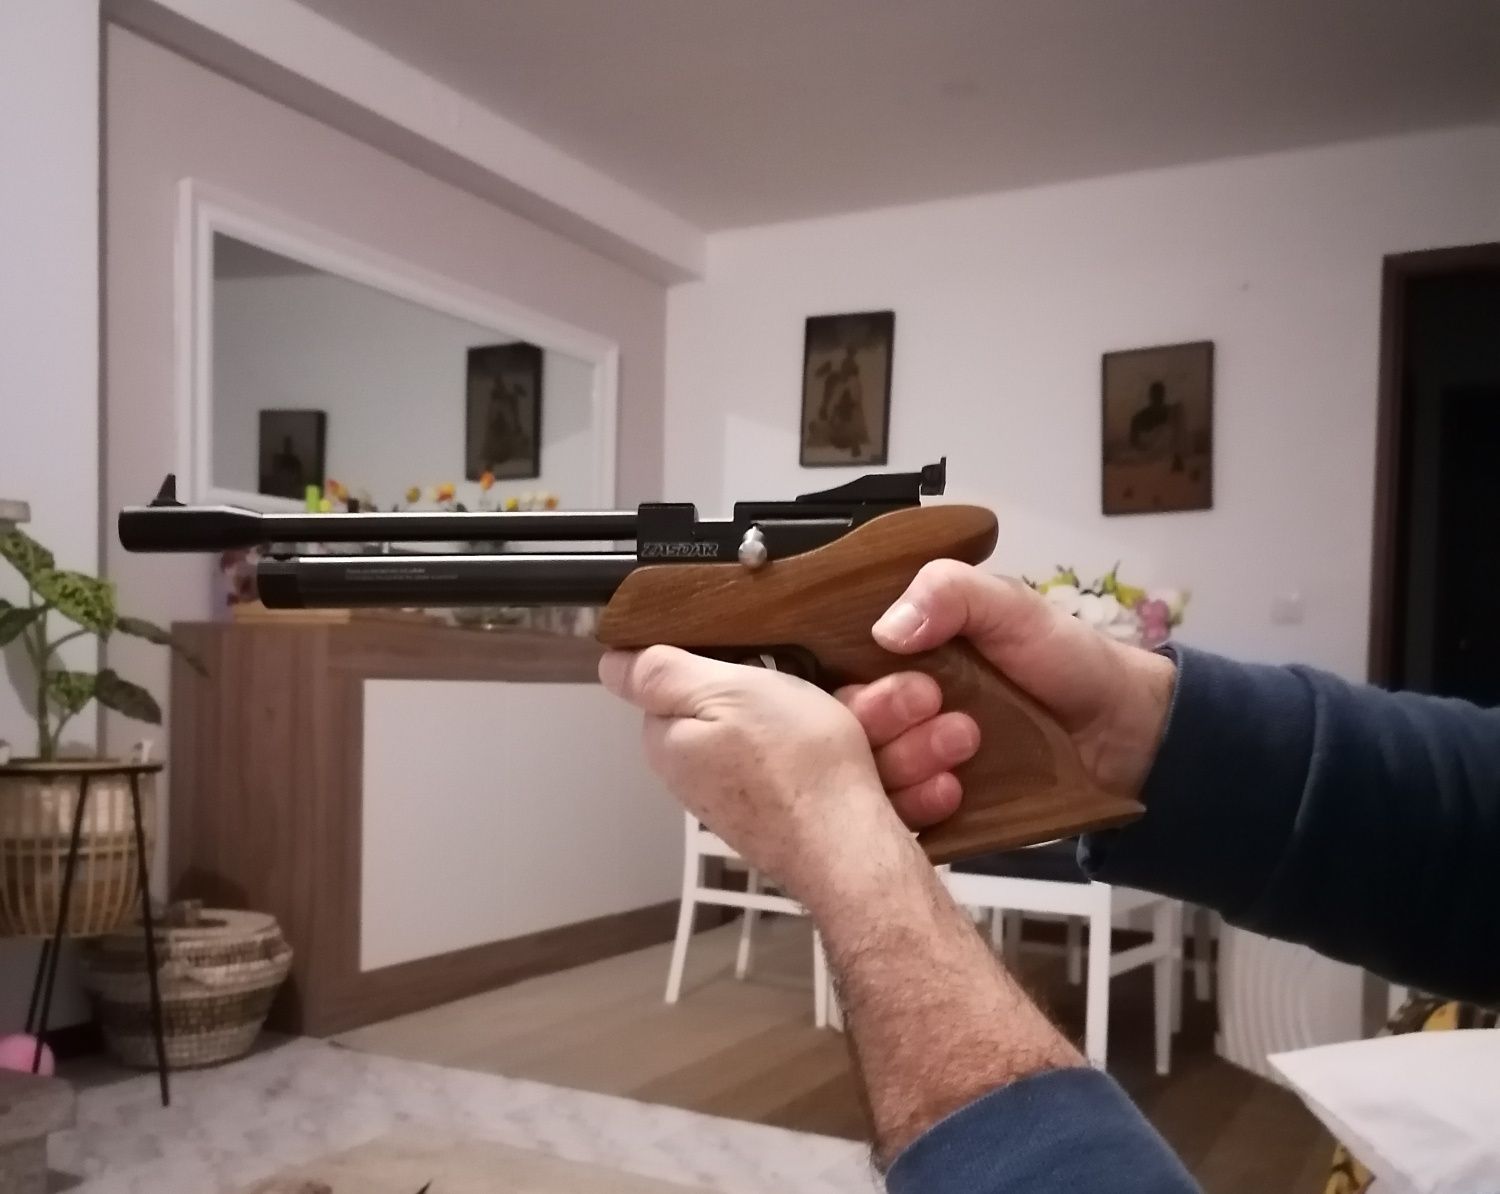 Vende-se Pistola de tiro desportivo Co2.